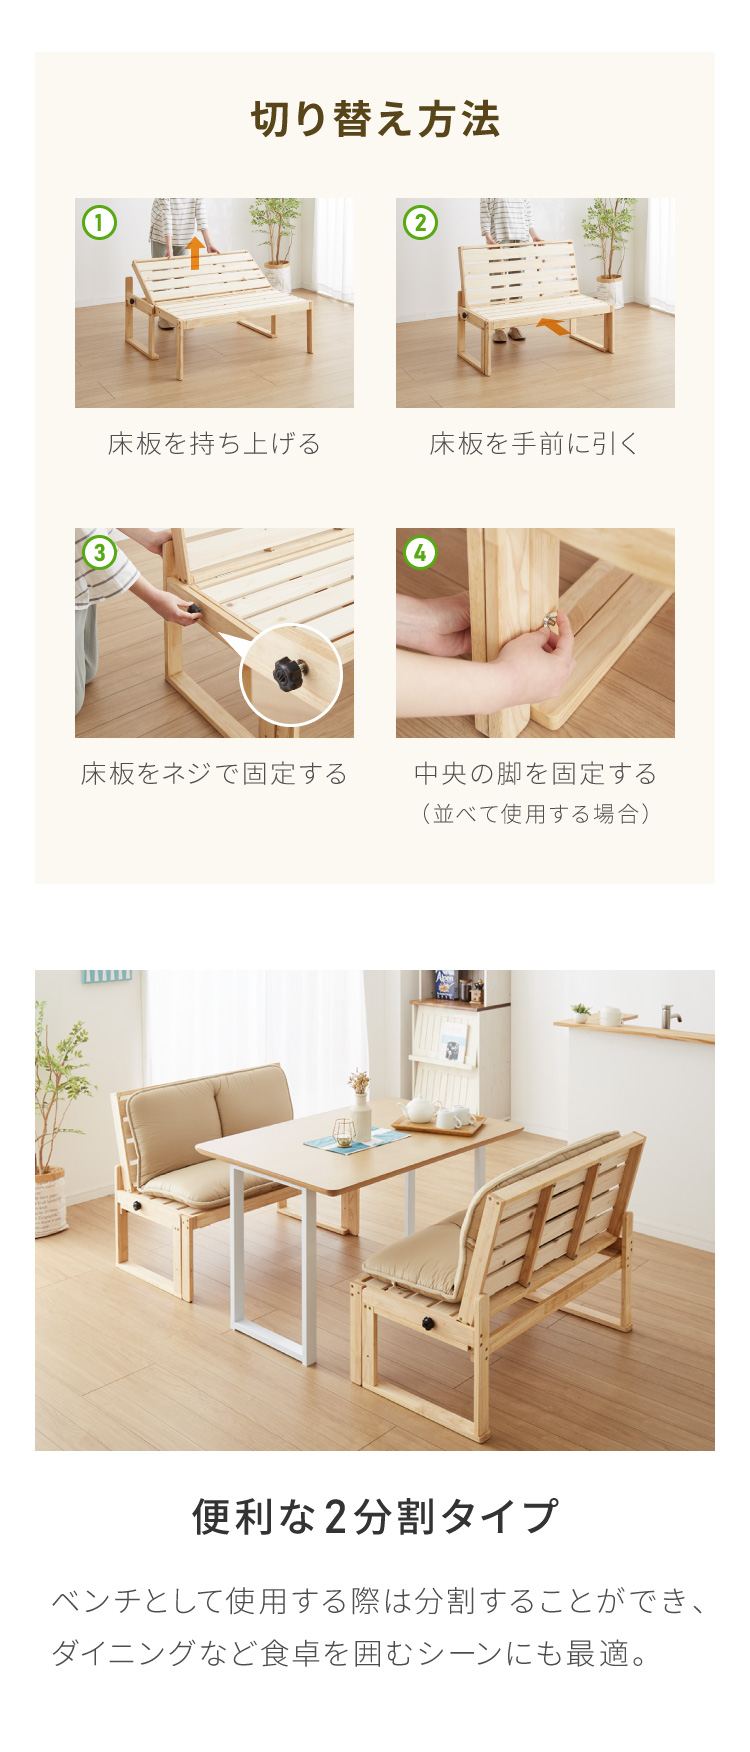 中居木工 ベンチベッド 2台連結可能 単品 日本製 すのこベッド シングルサイズ 檜 ラバーウッド 天然木 ダイニングベンチ 伸長式ソファ  ソファベッド 代引不可